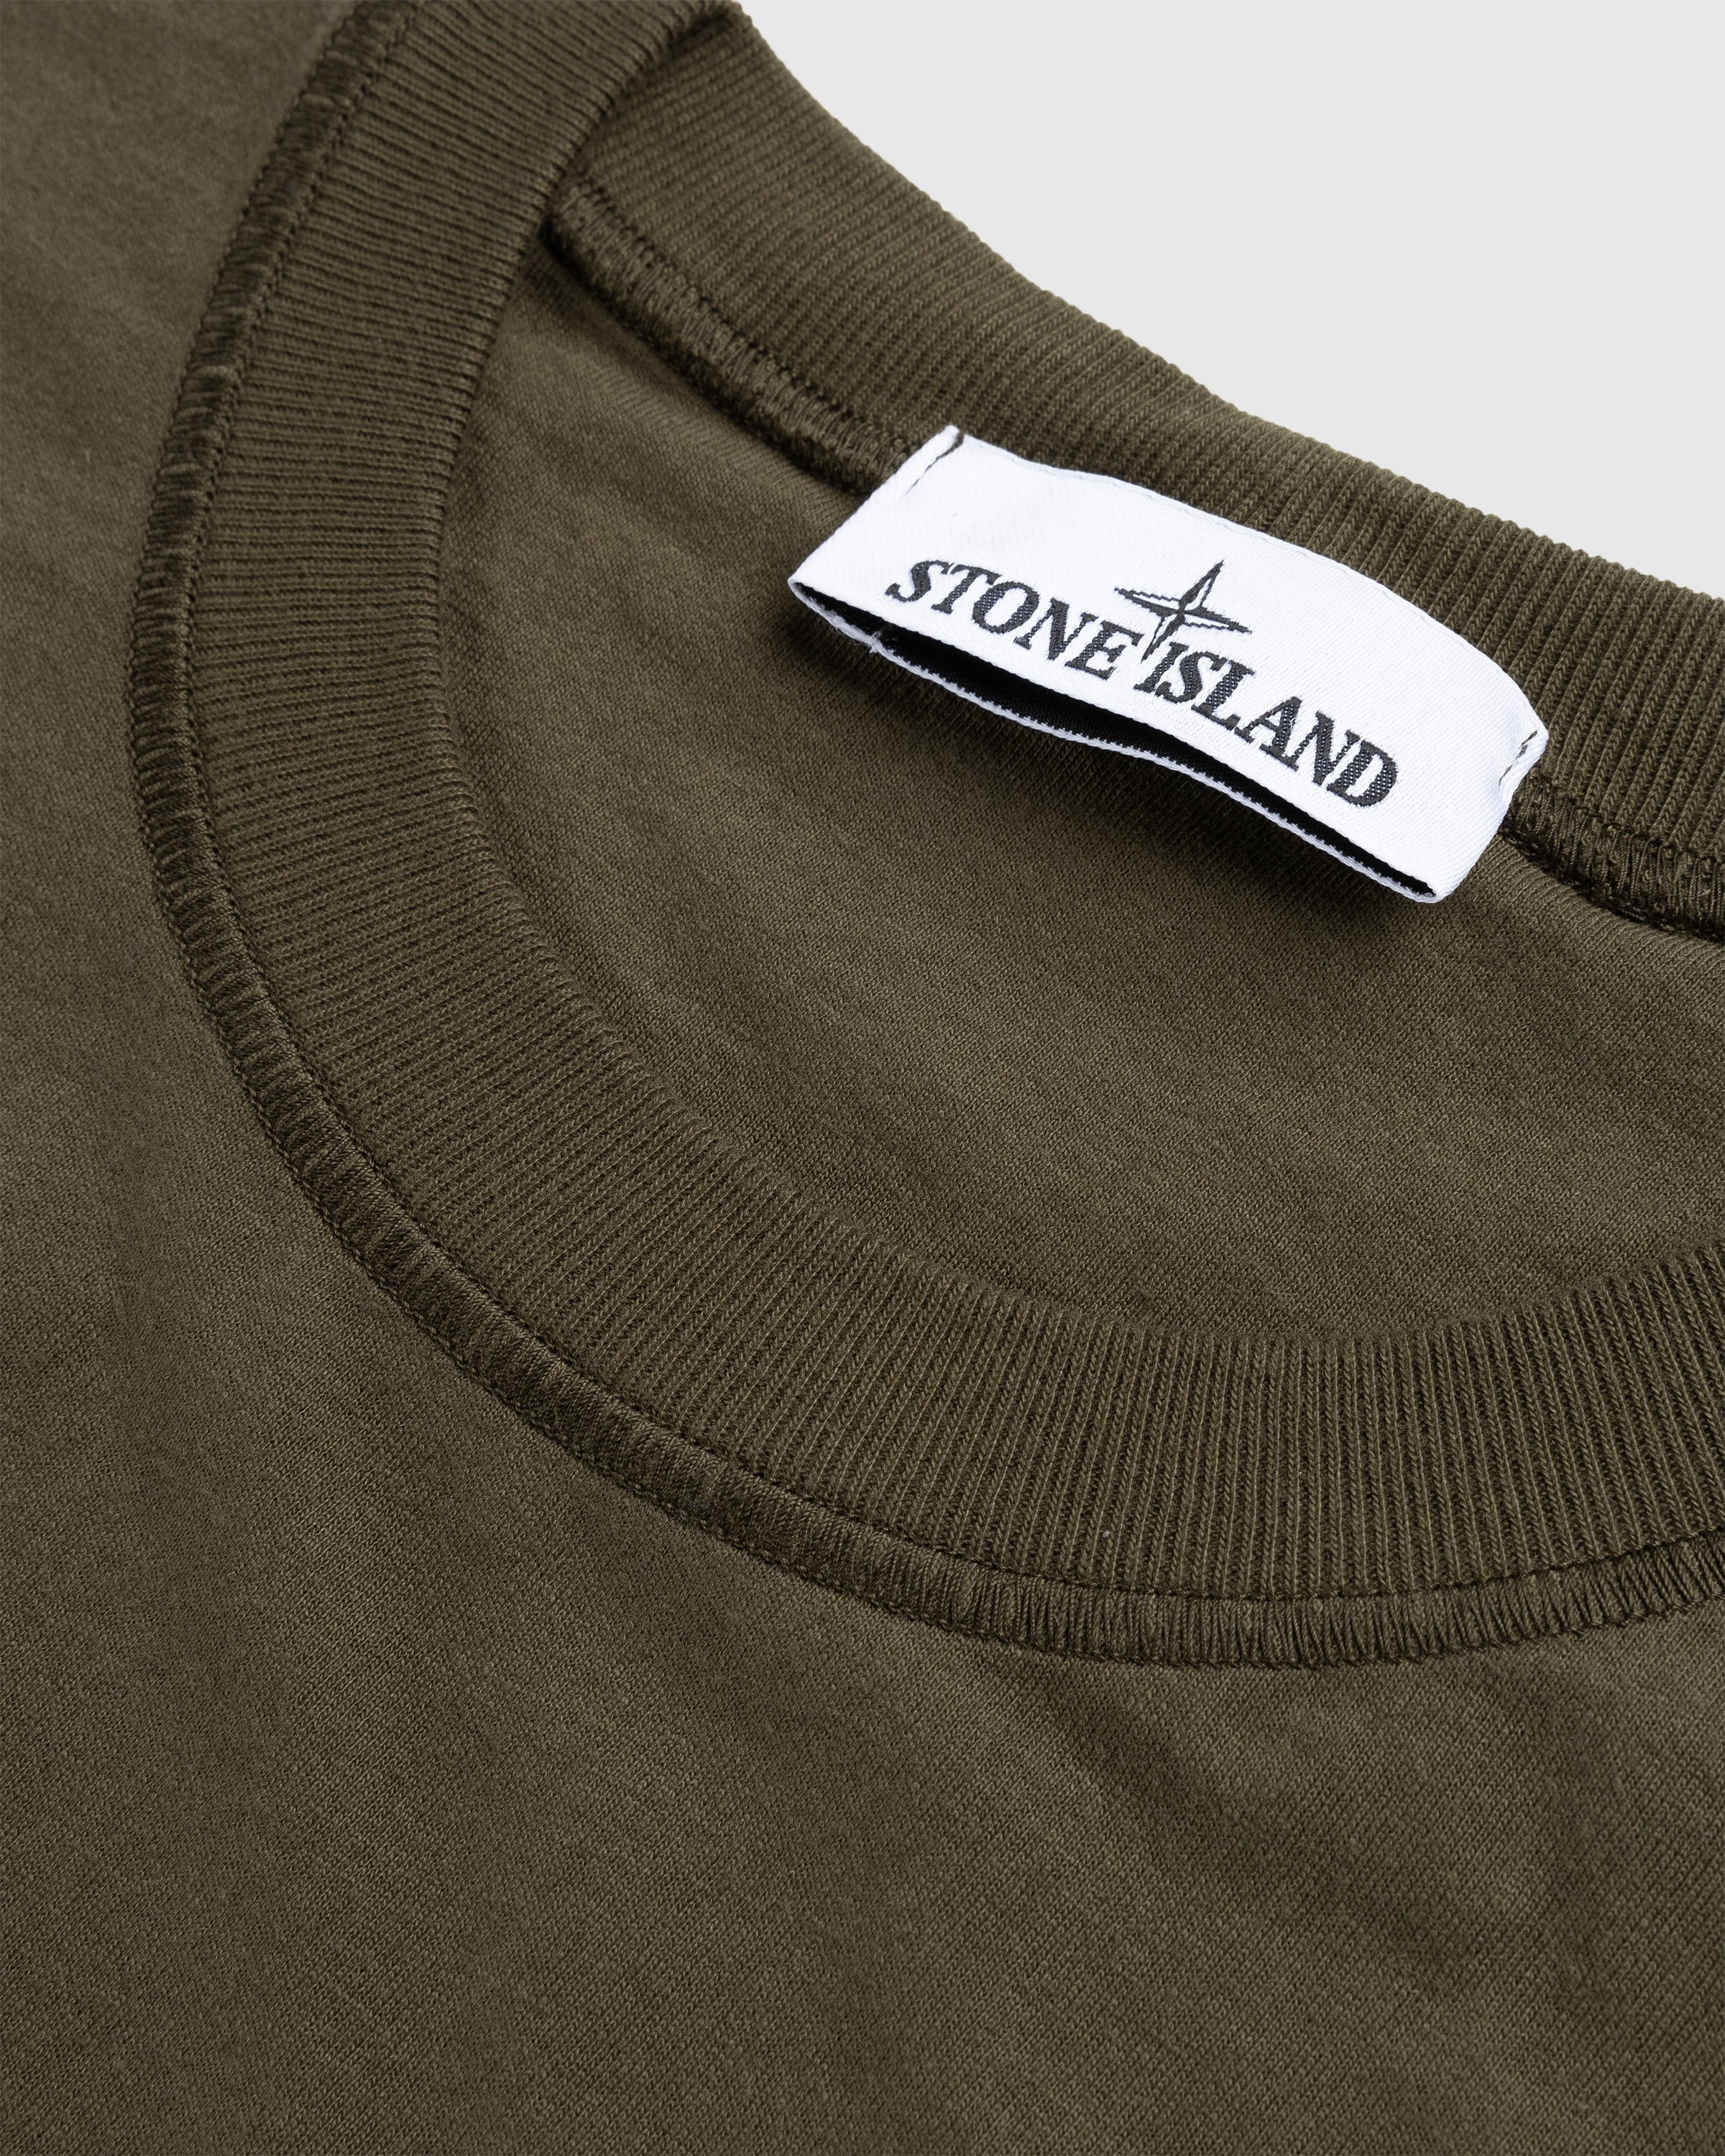 Stone Island - Fissato Longsleeve T-Shirt Olive - Clothing - Green - Image 6